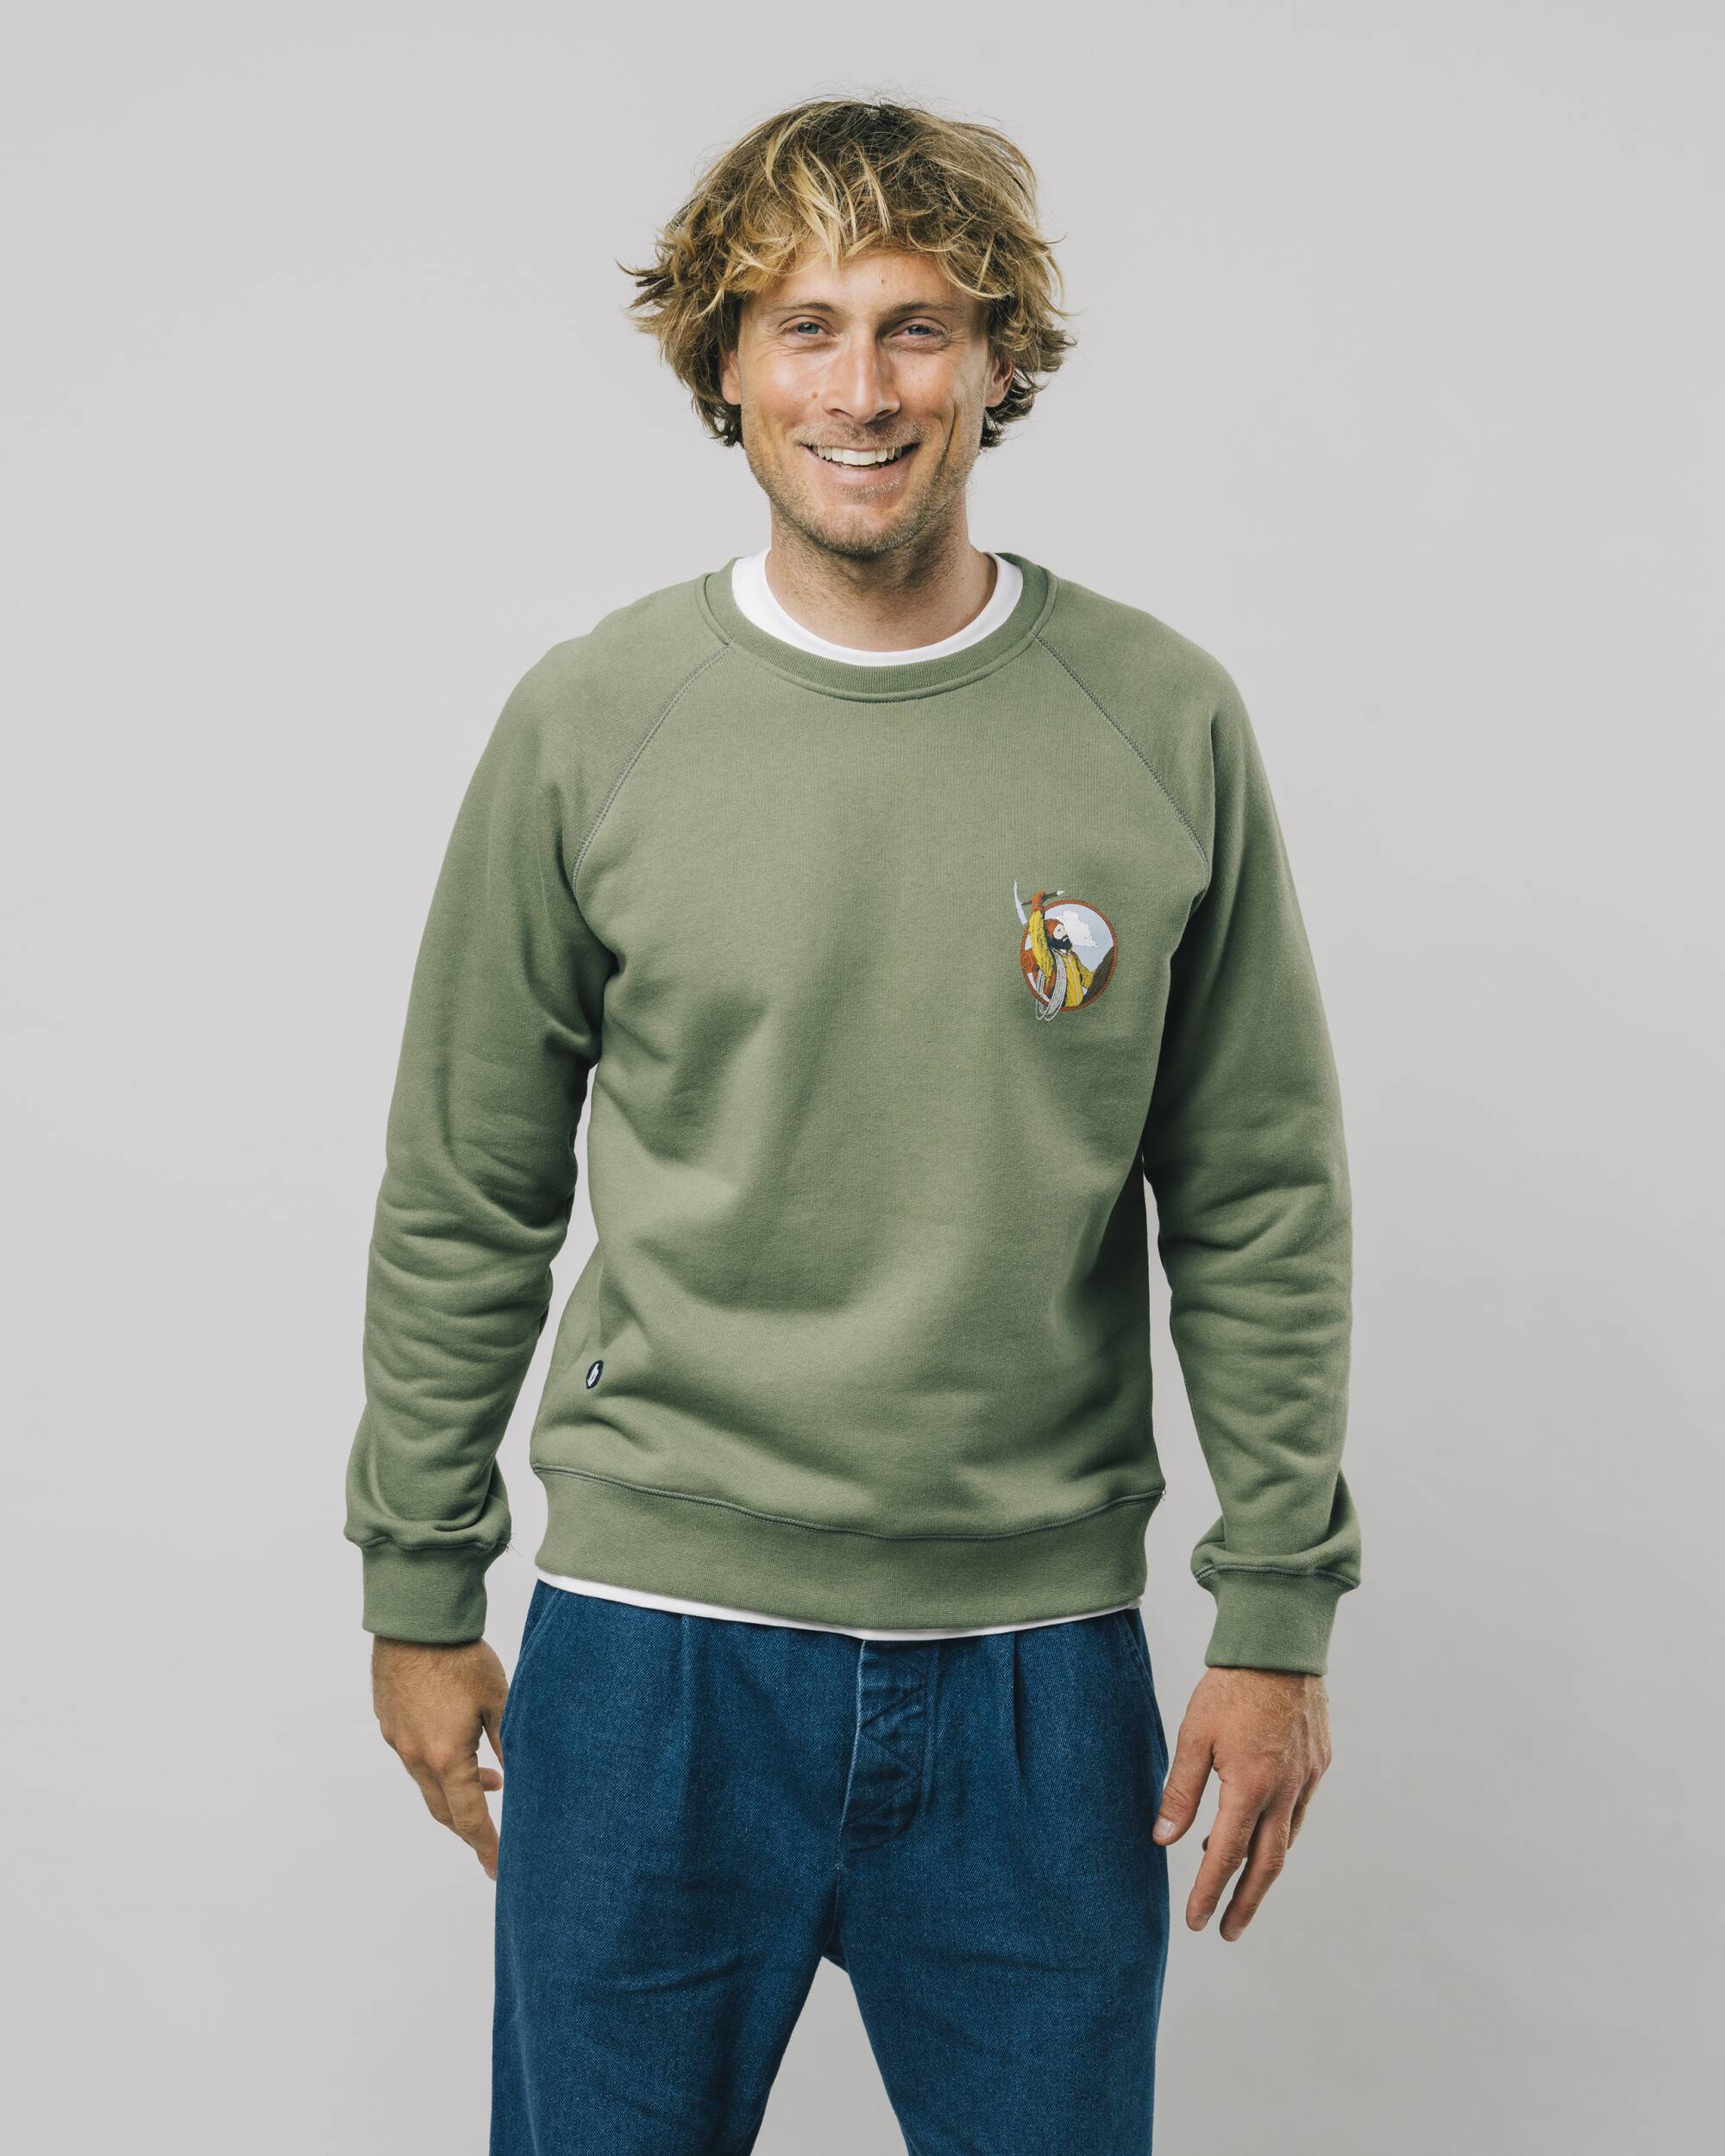 Sweatshirt "The Hiker" in grün / oliv aus 100% Bio - Baumwolle von Brava Fabrics